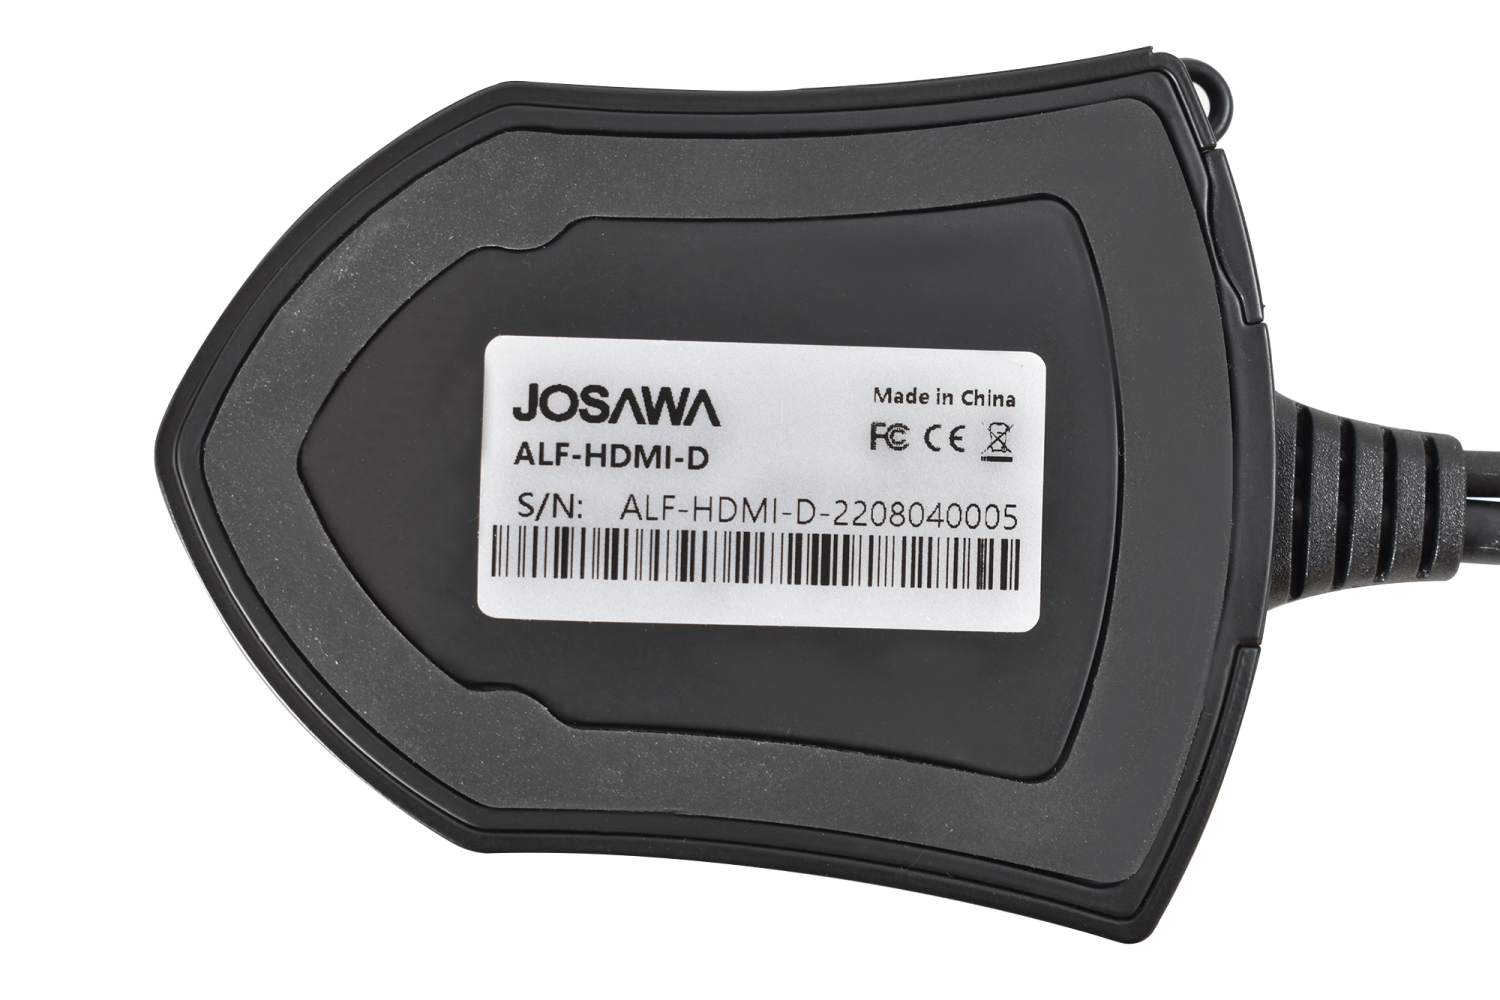 Josawa HDMI-D